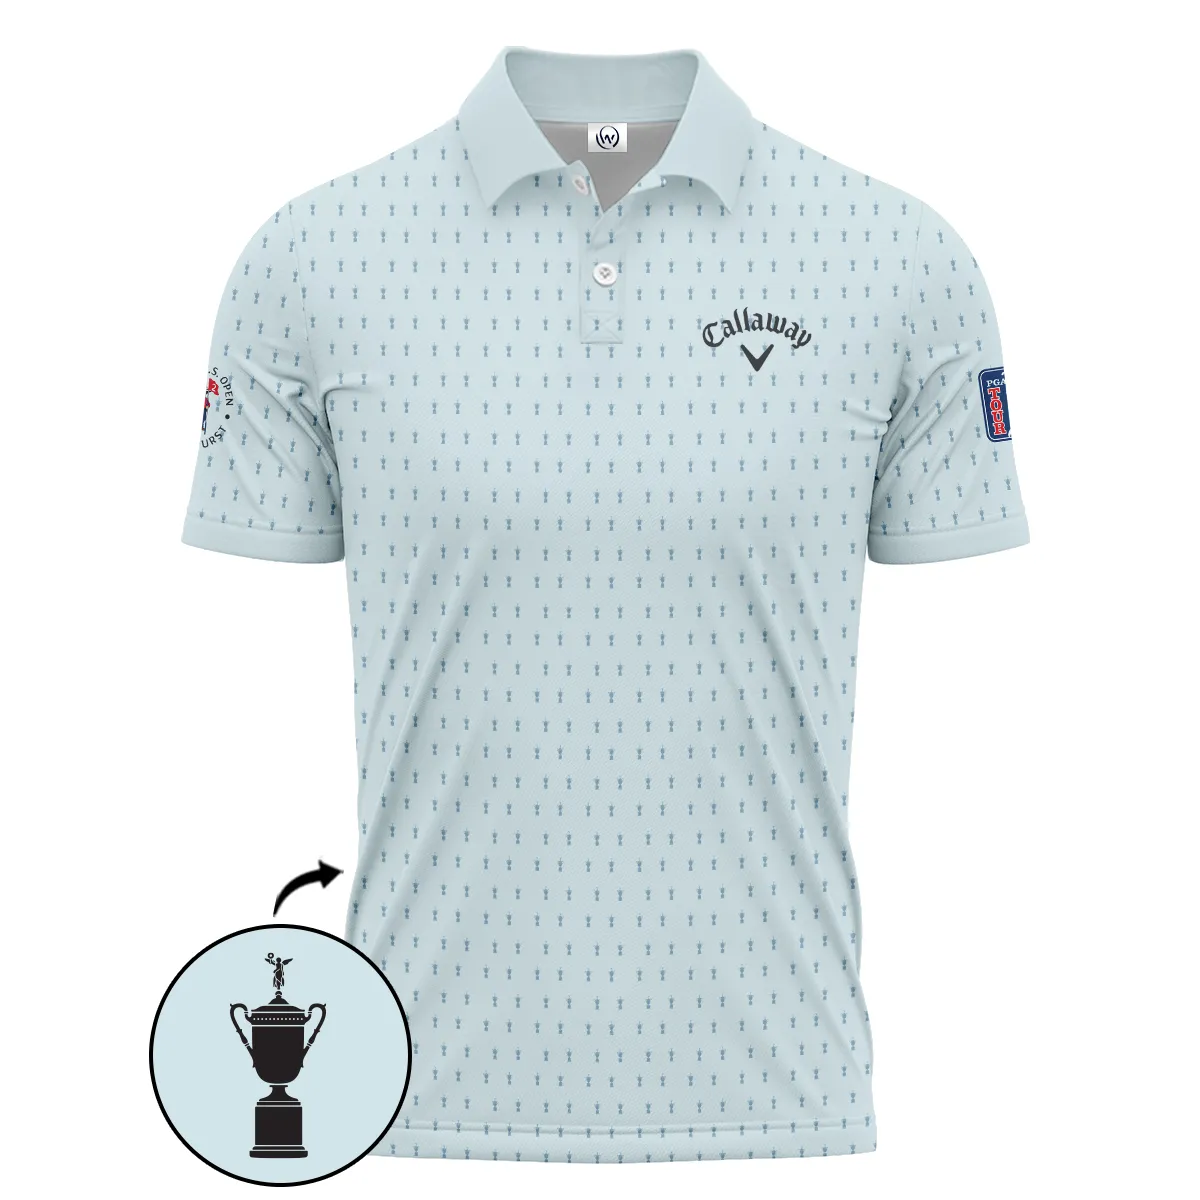 Golf Pattern Cup Light Blue Mix Green 124th U.S. Open Pinehurst Pinehurst Callaway Zipper Polo Shirt Style Classic